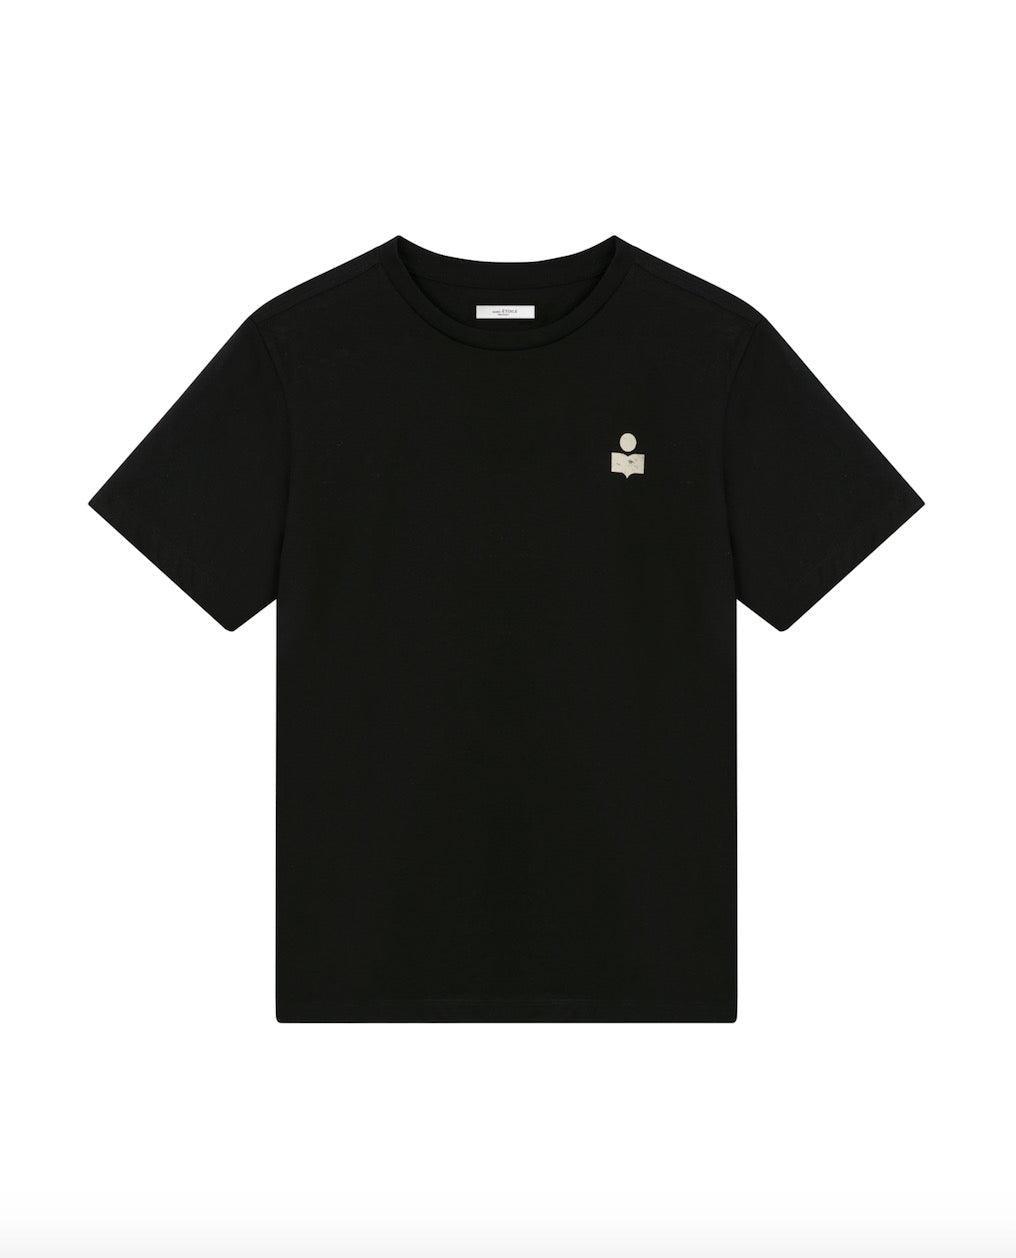 Isabel Marant Etoile - Zewel Black Logo T-Shirt - 32 The Guild 